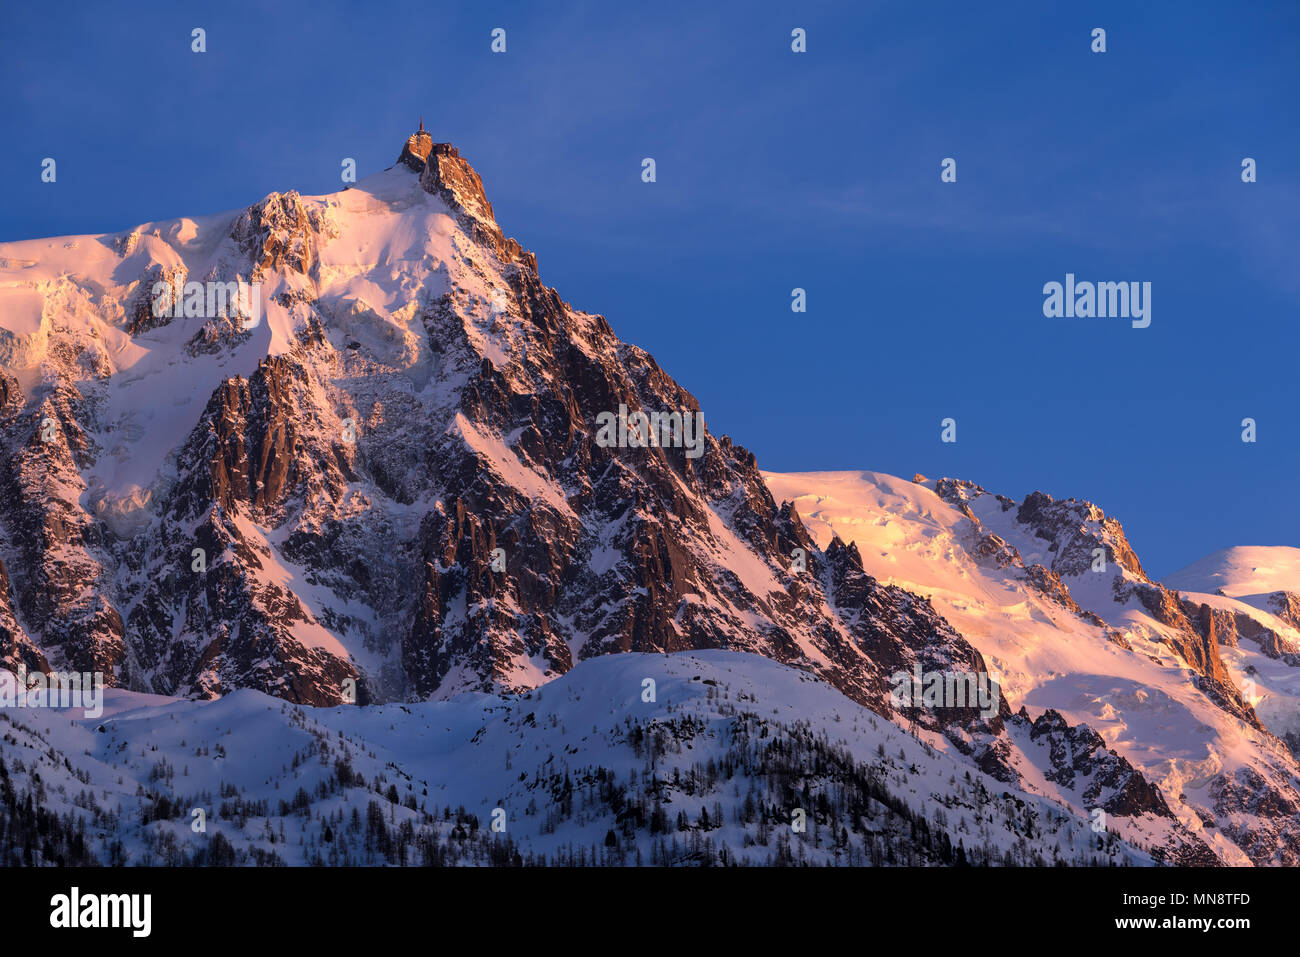 Aiguille du Midi ago al tramonto con vista sui ghiacciai della catena montuosa del Monte Bianco. Chamonix, Alta Savoia (Alta Savoia), Alpi, Francia Foto Stock